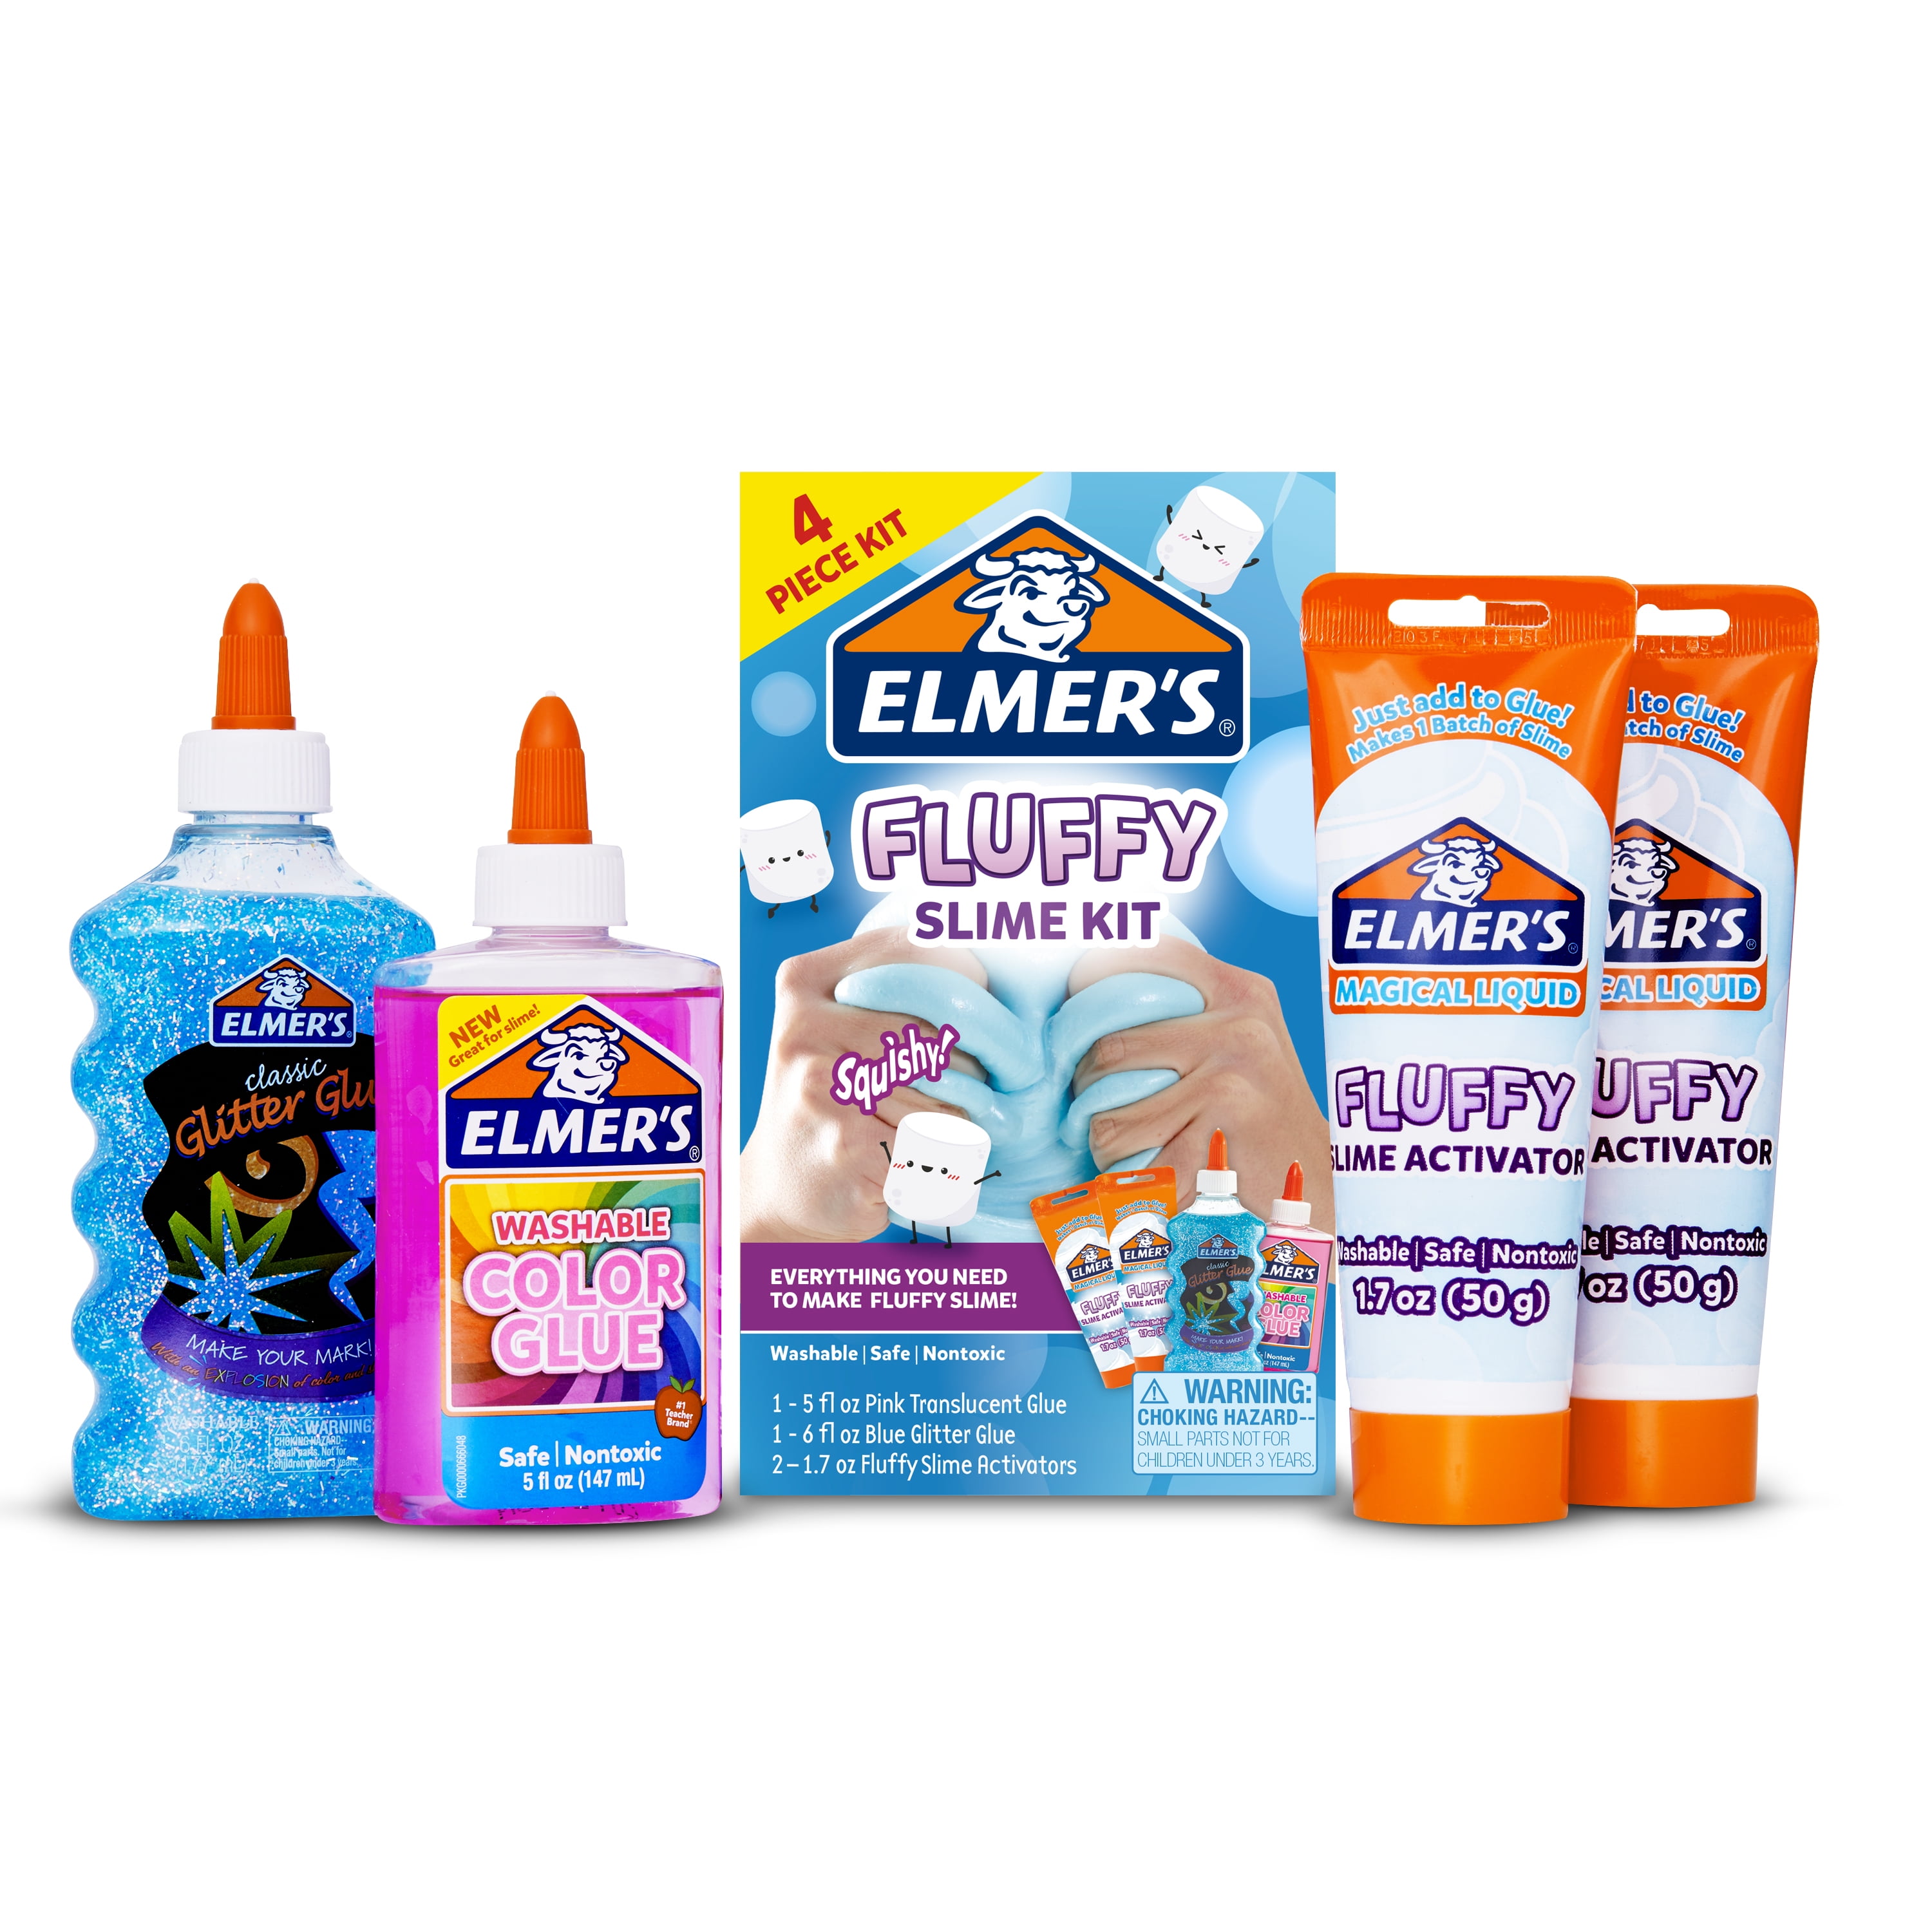 Elmer's: Glue, Slime, & Squishies